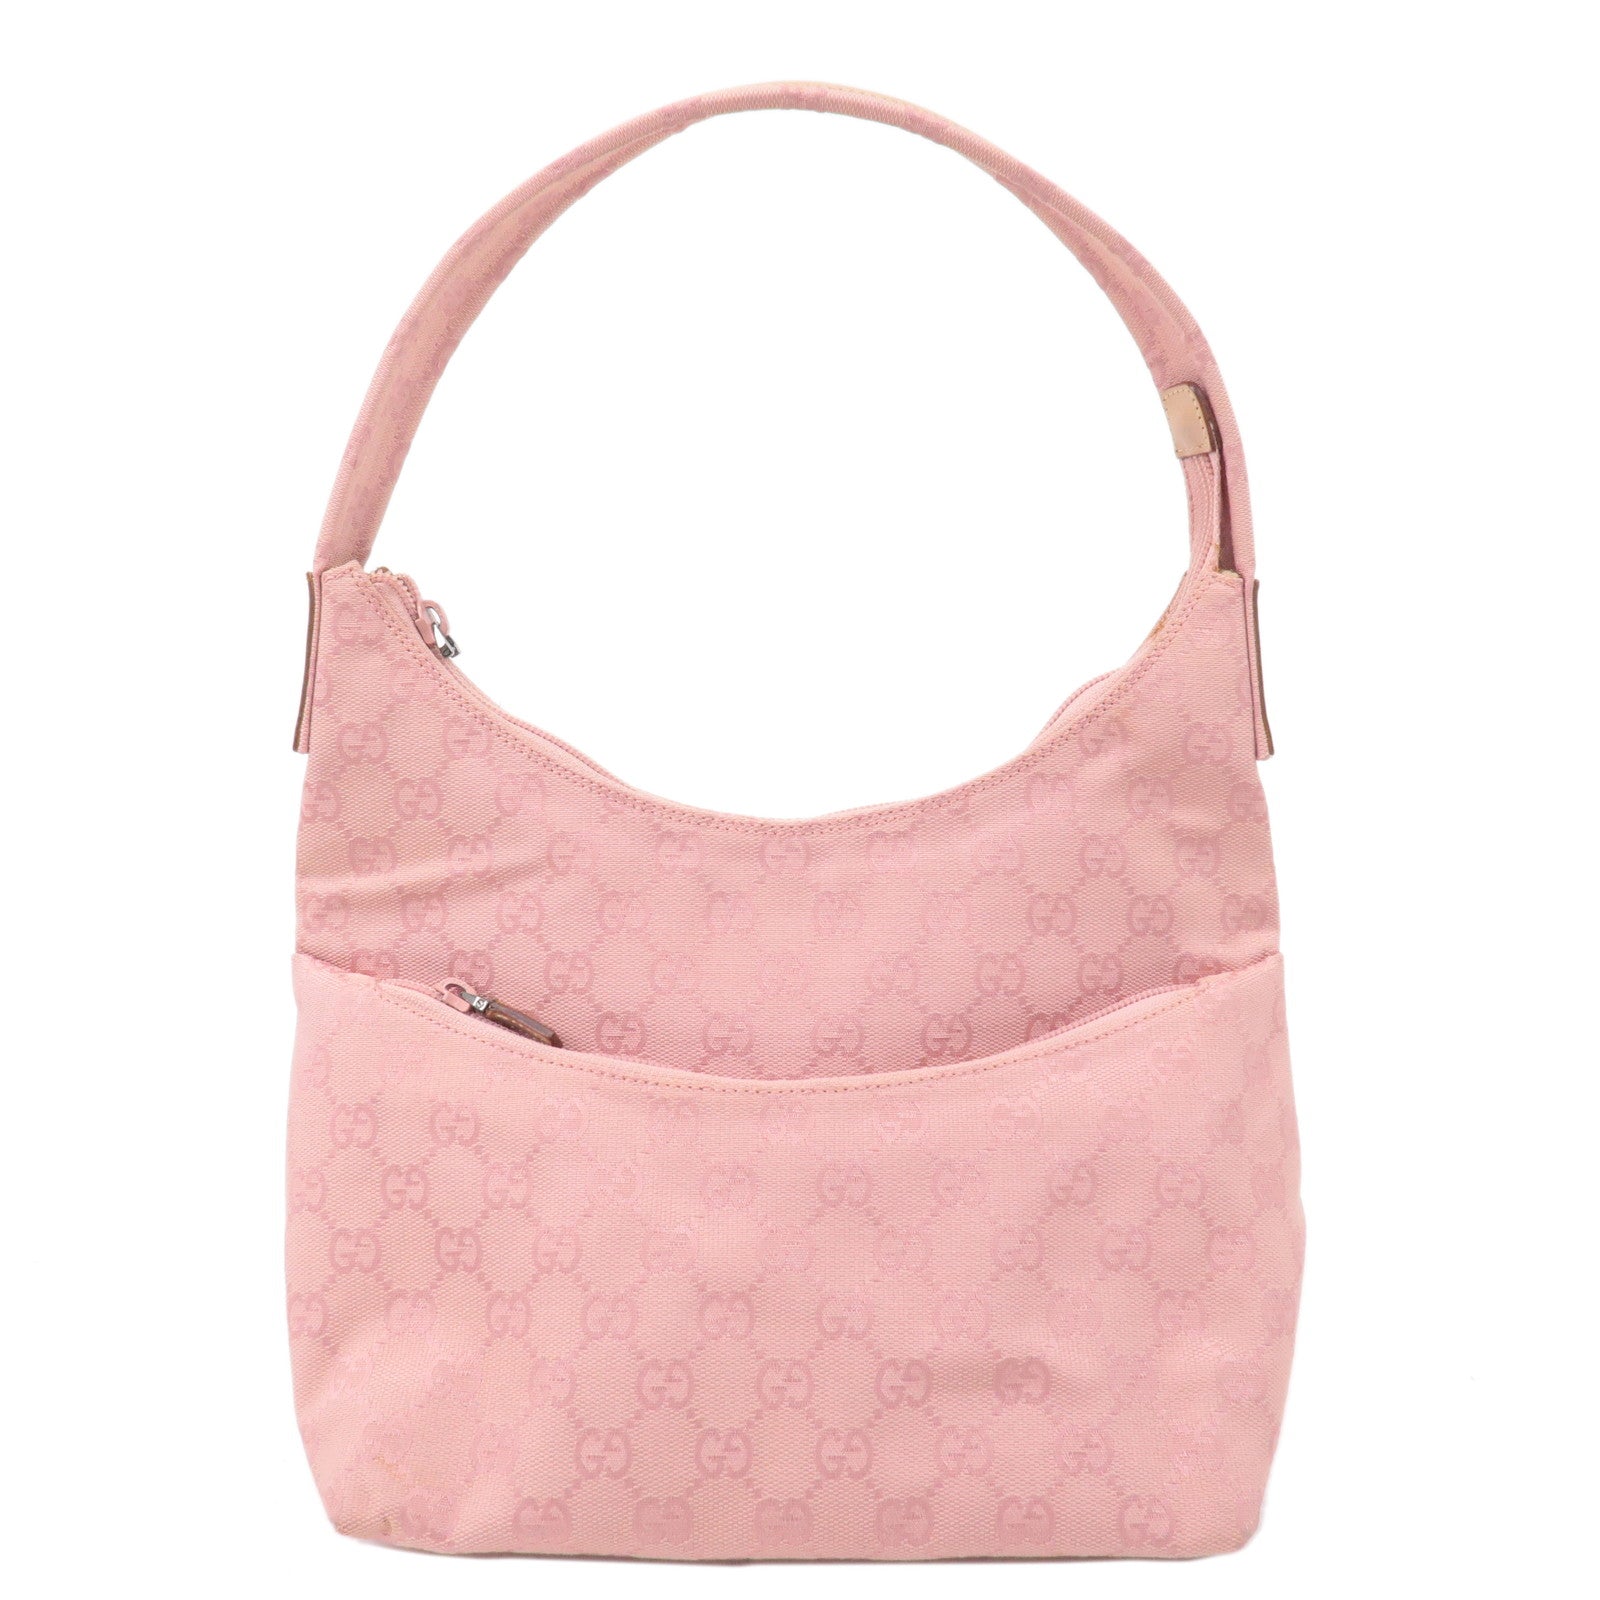 GUCCI-GG-Canvas-Leather-Shoulder-Bag-Hand-Bag-Pink-001・3386